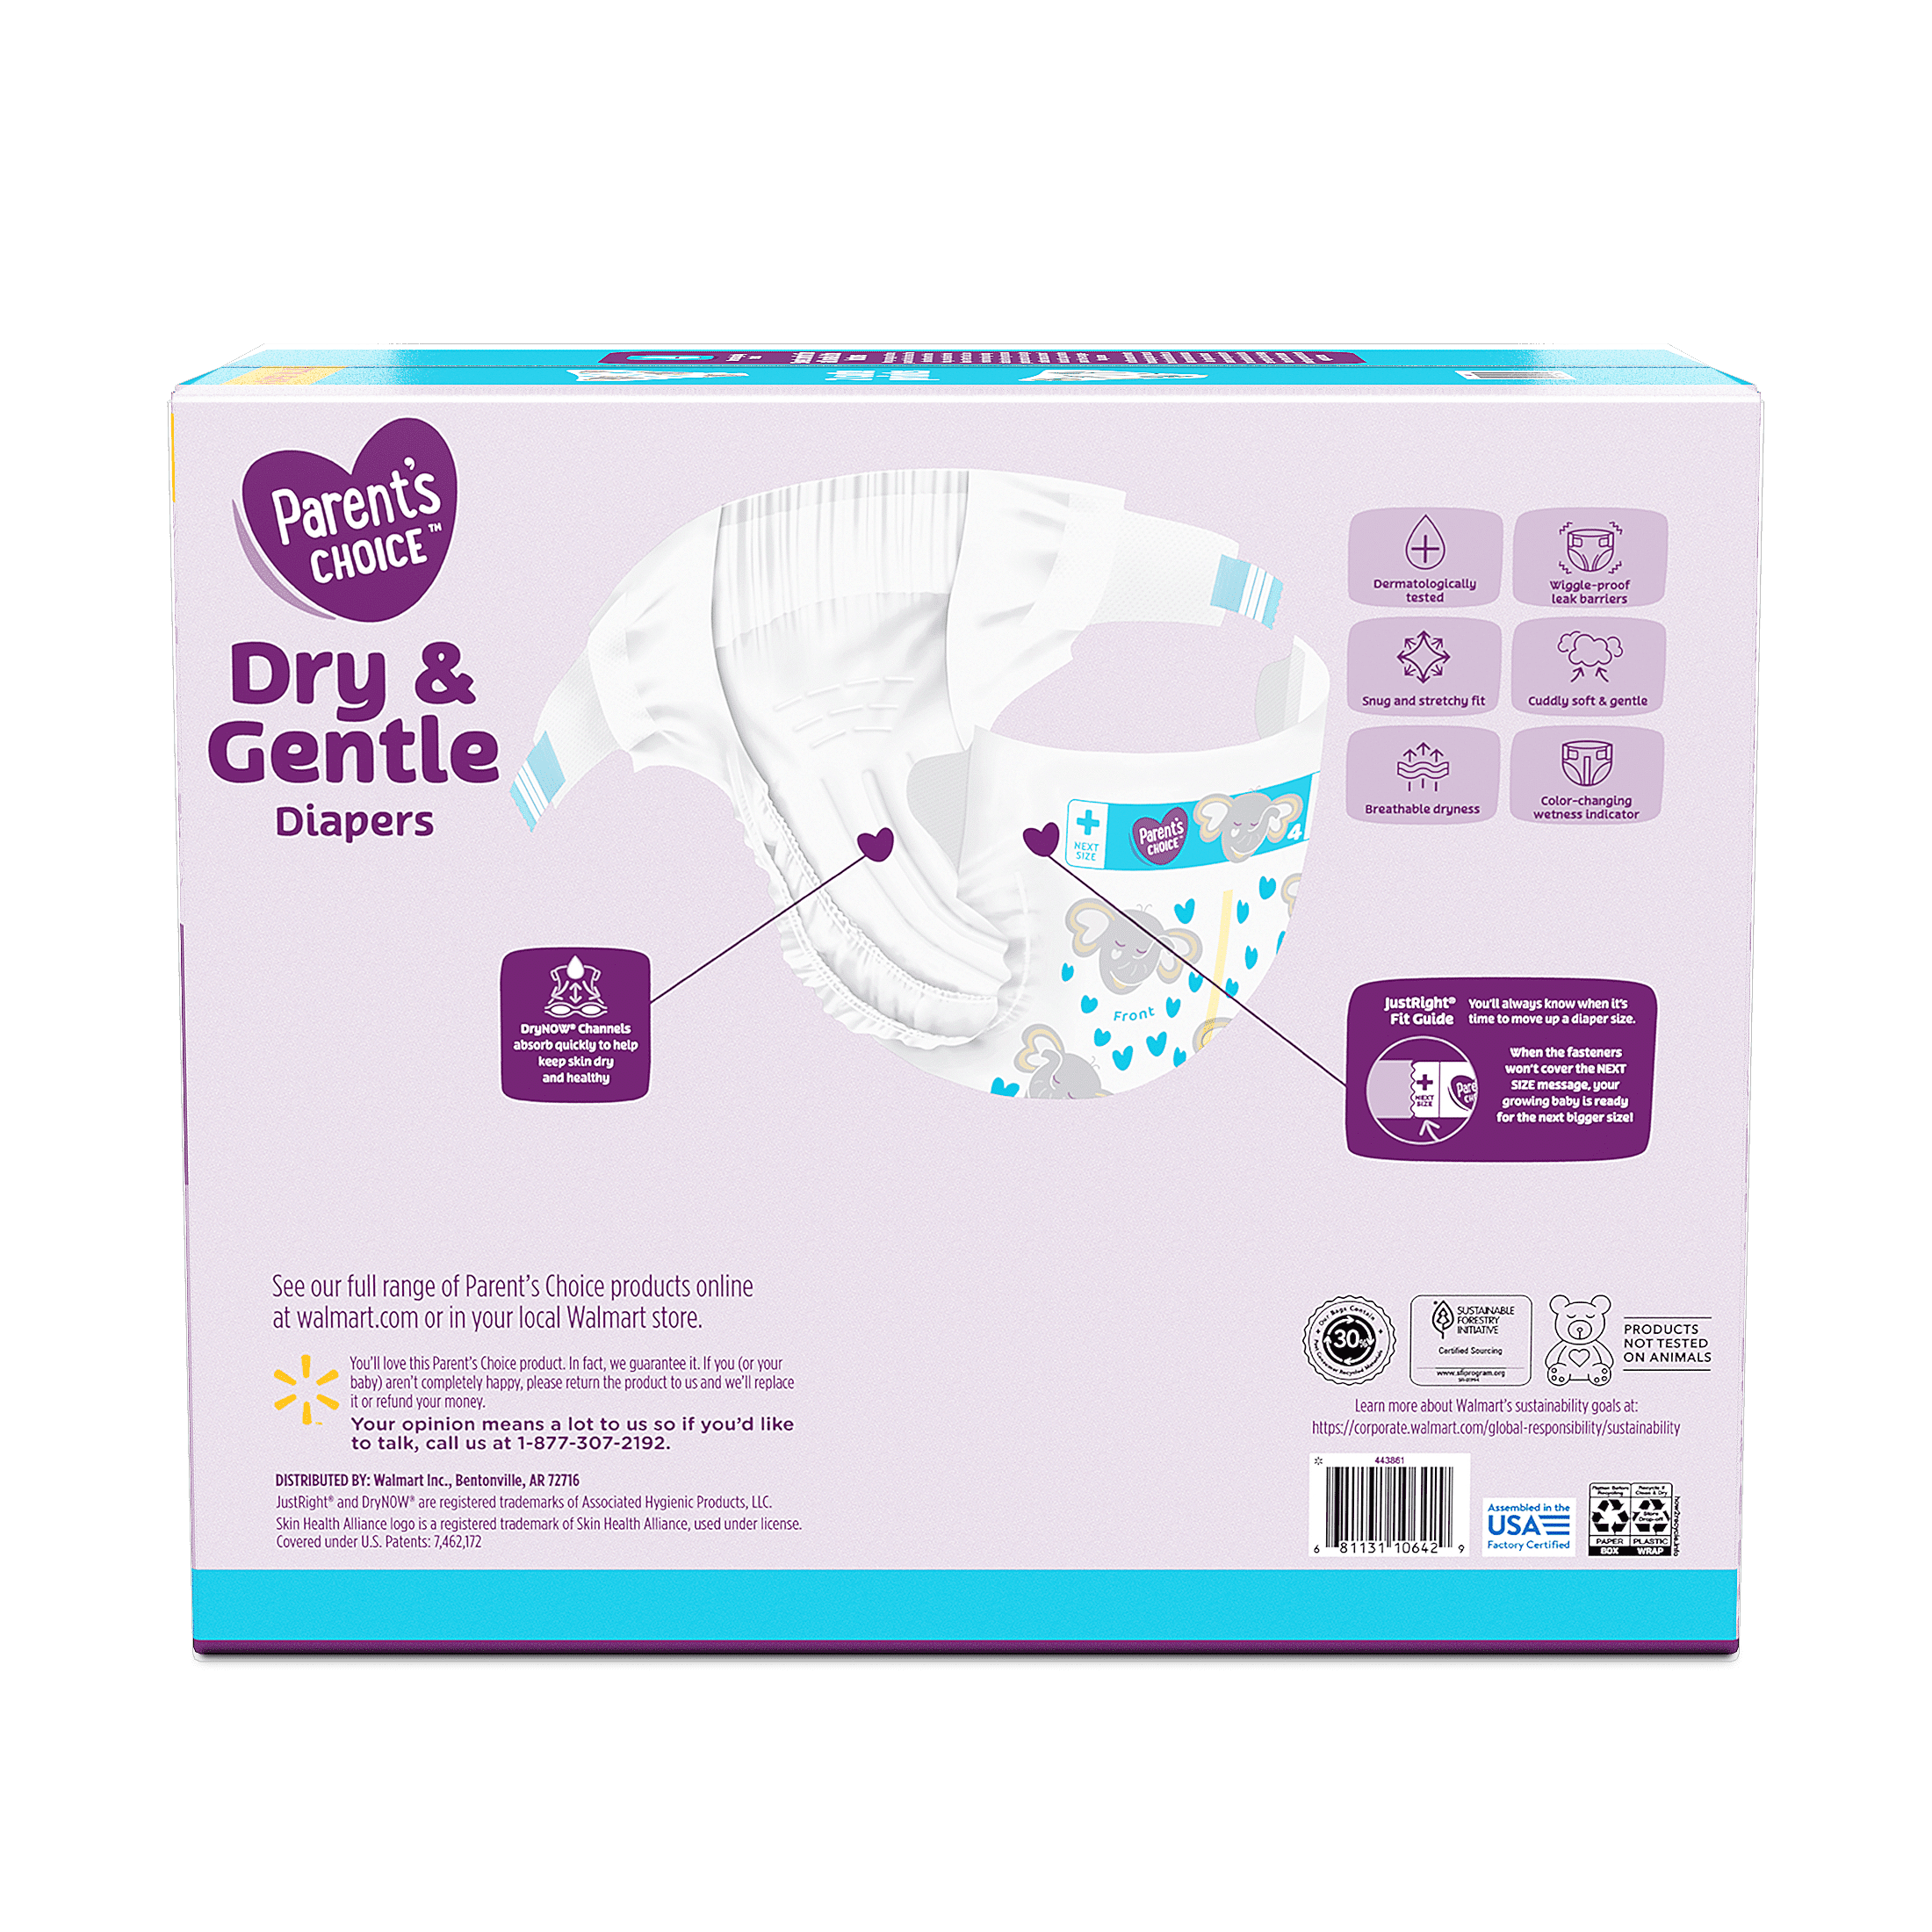 Comprar Pañal Parent Choice Baby Diaper Size 0 Nb - 42 Unidades, pañales  talla 0